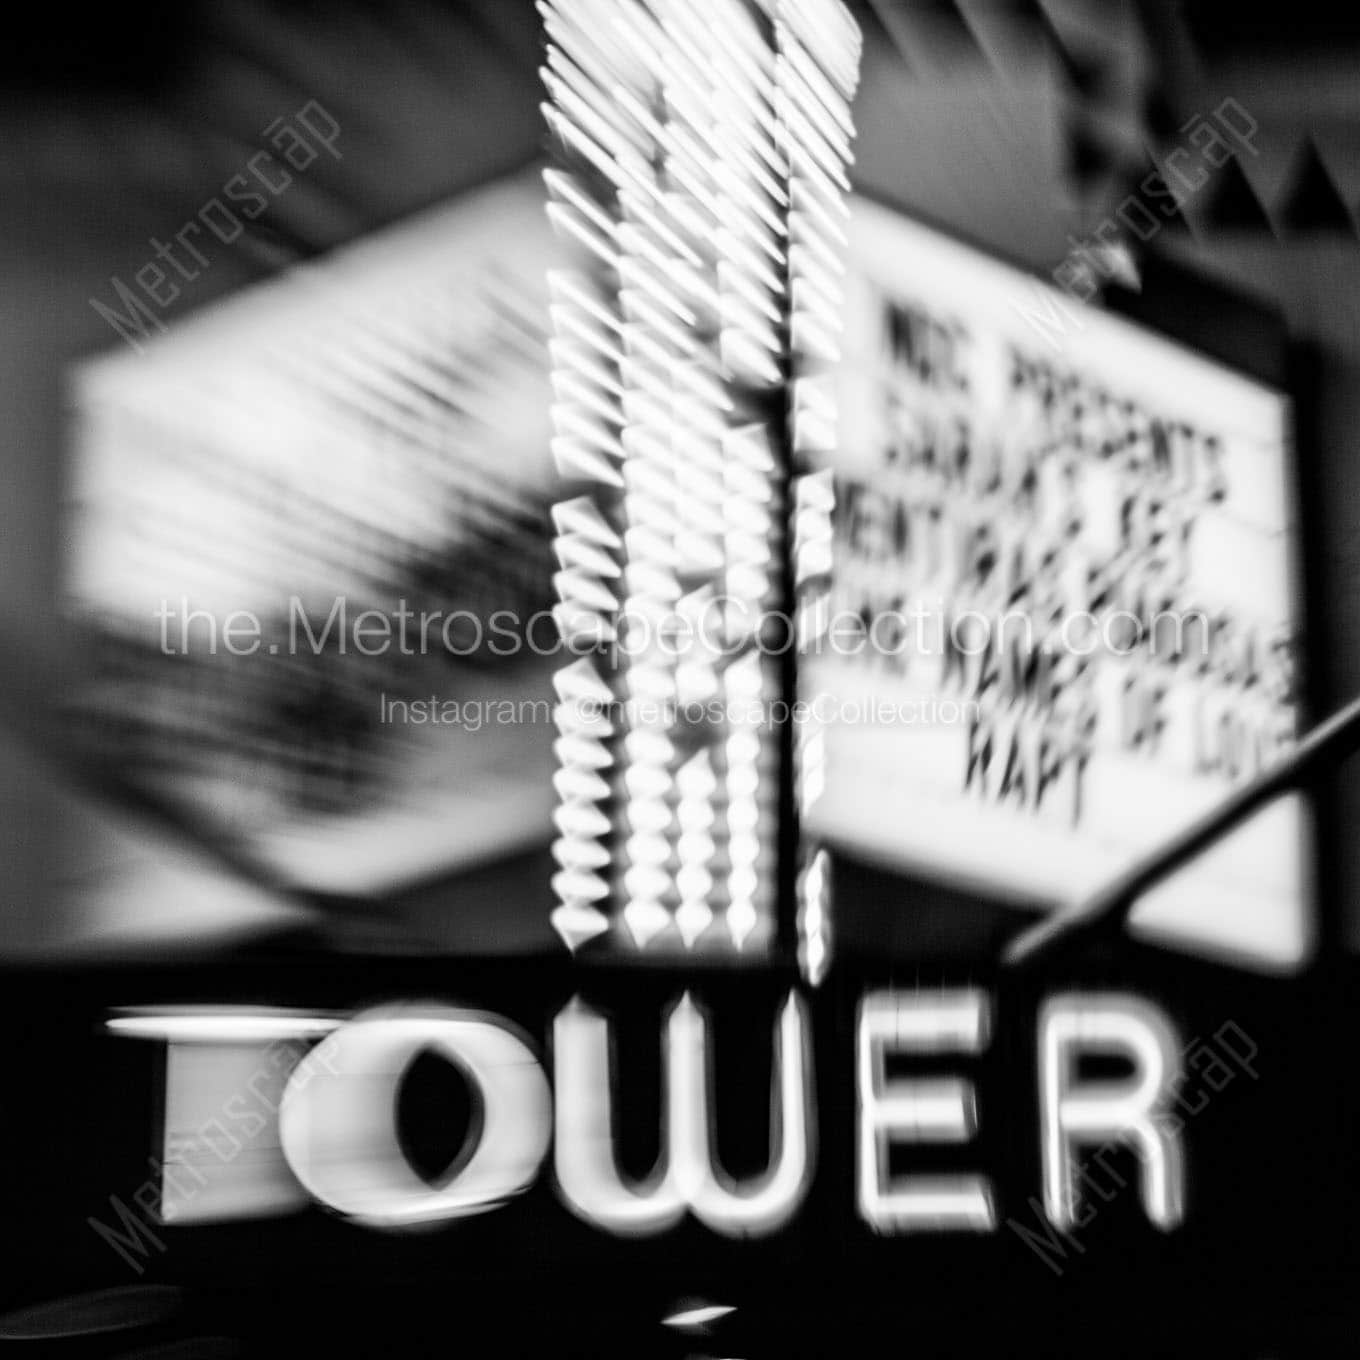 tower theater little havana Black & White Office Art